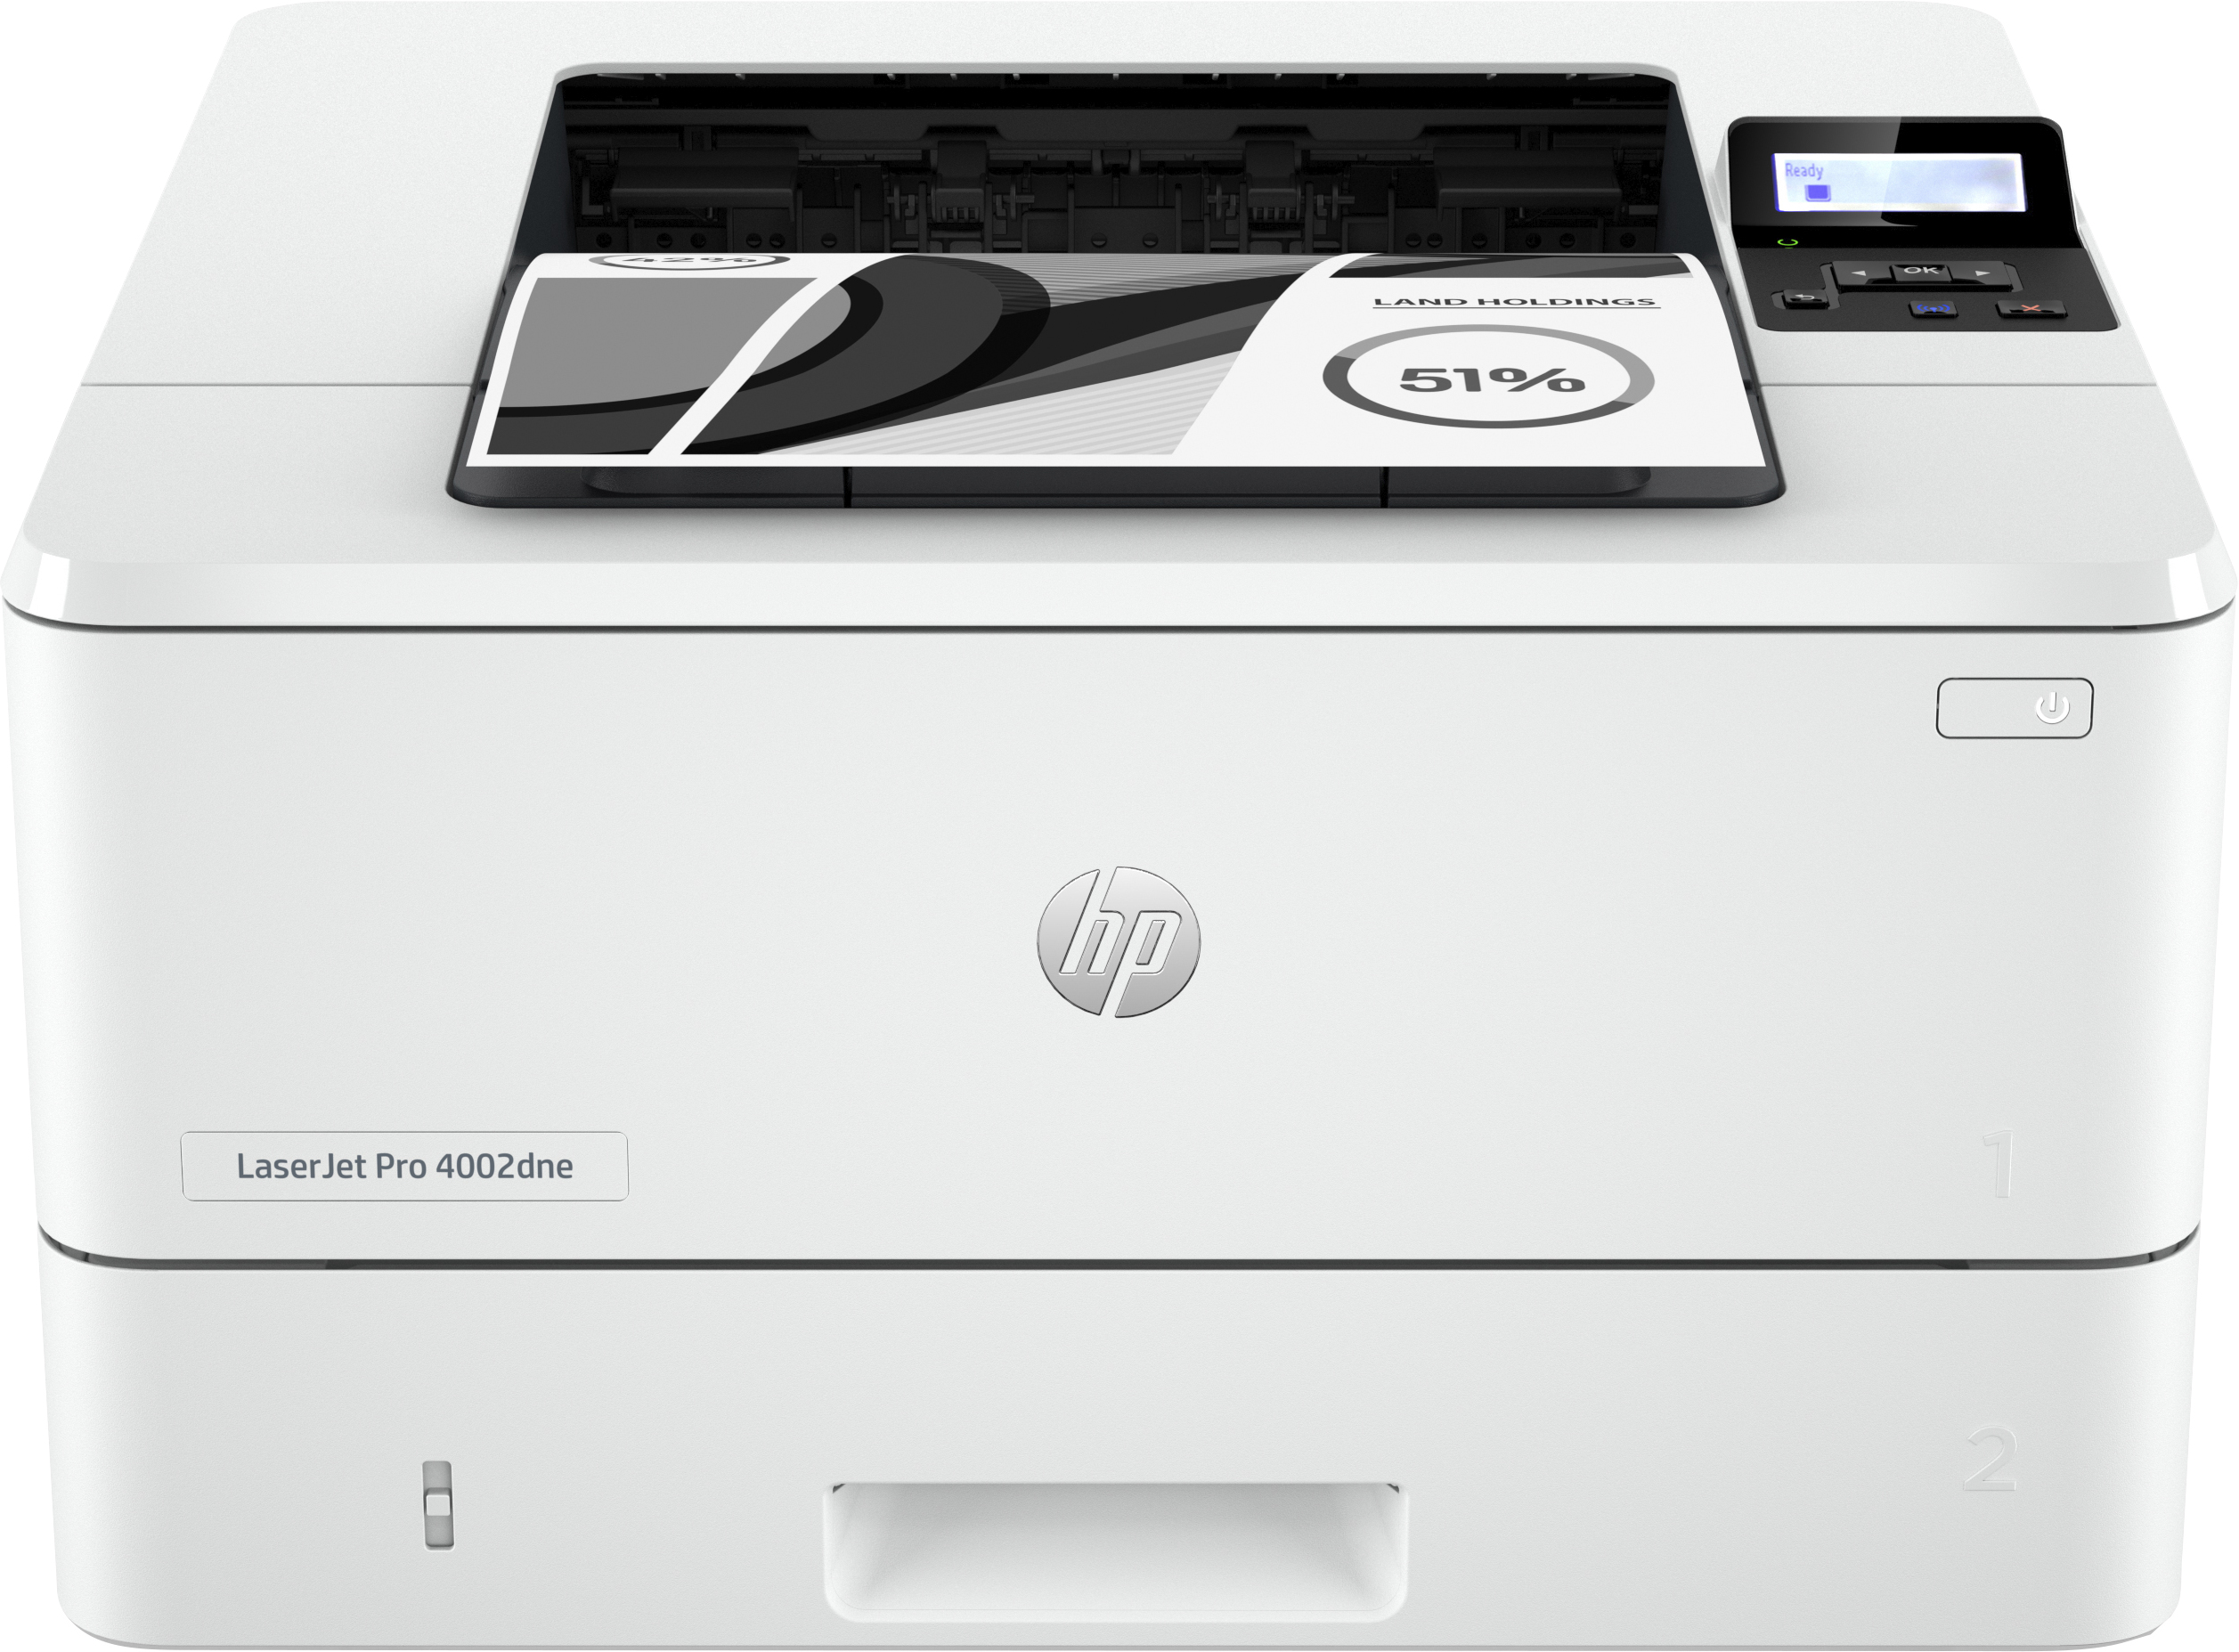 Image of HP LaserJet Pro Stampante HP 4002dne, Bianco e nero, Stampante per Piccole e medie imprese, Stampa, HP+; idonea per HP Instant Ink; stampa da smartphone o tablet; stampa fronte/retro